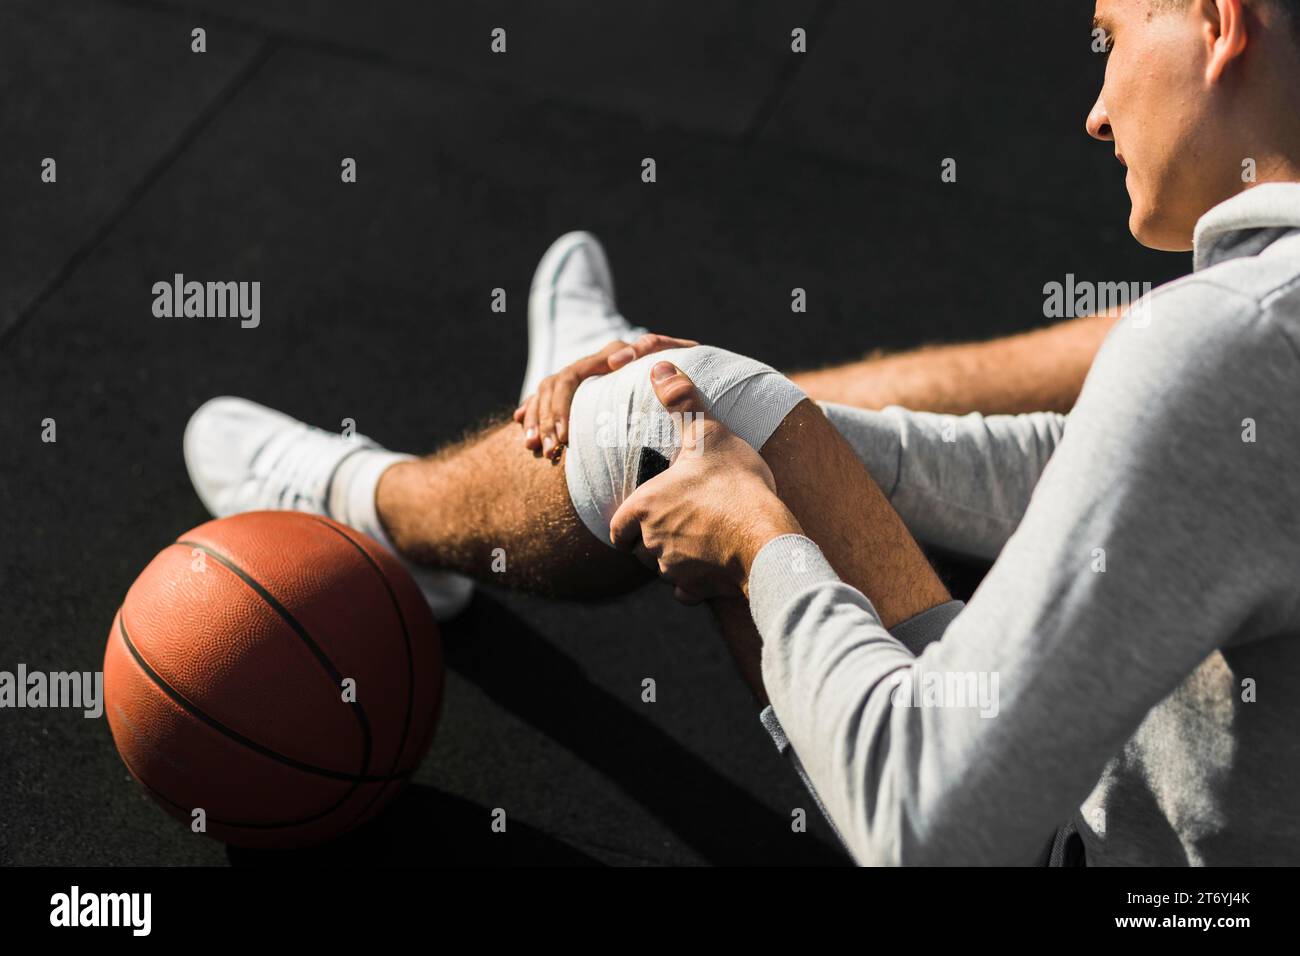 Joueur de basket-ball appliquant un bandage au genou Banque D'Images